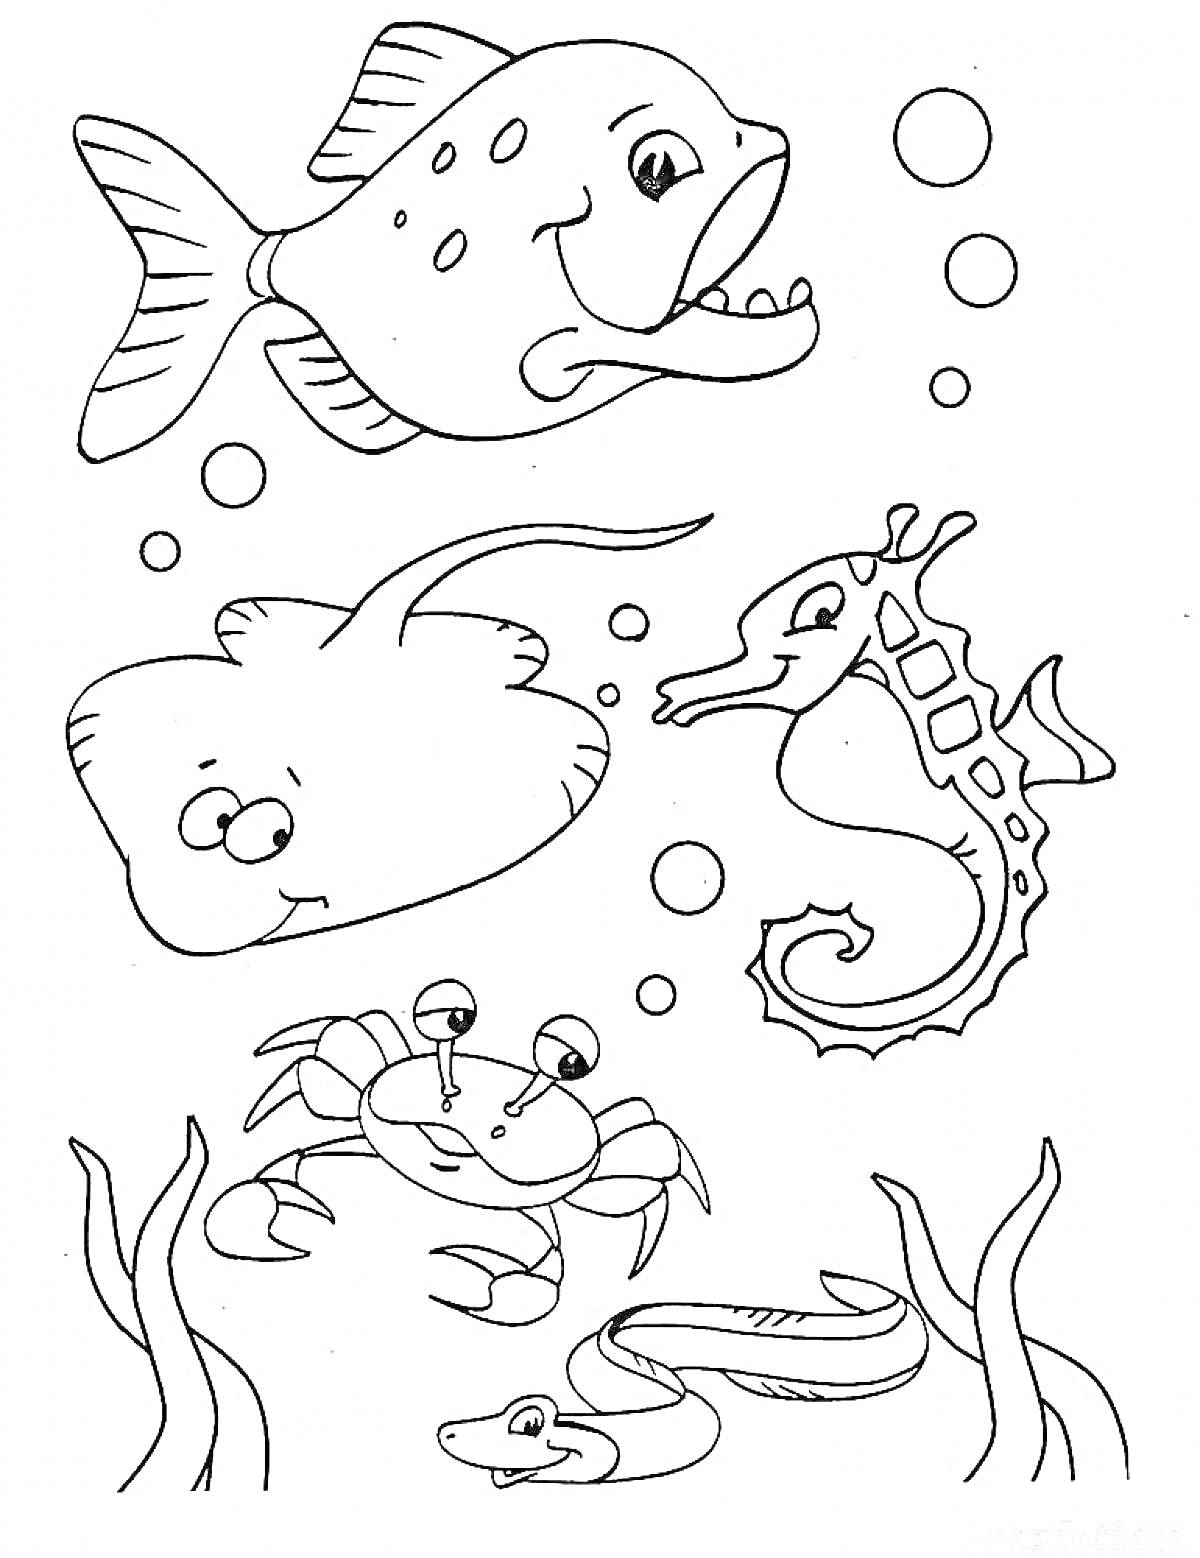 Раскраска Рыба, скат, морской конек, краб, угорь, водоросли и пузыри